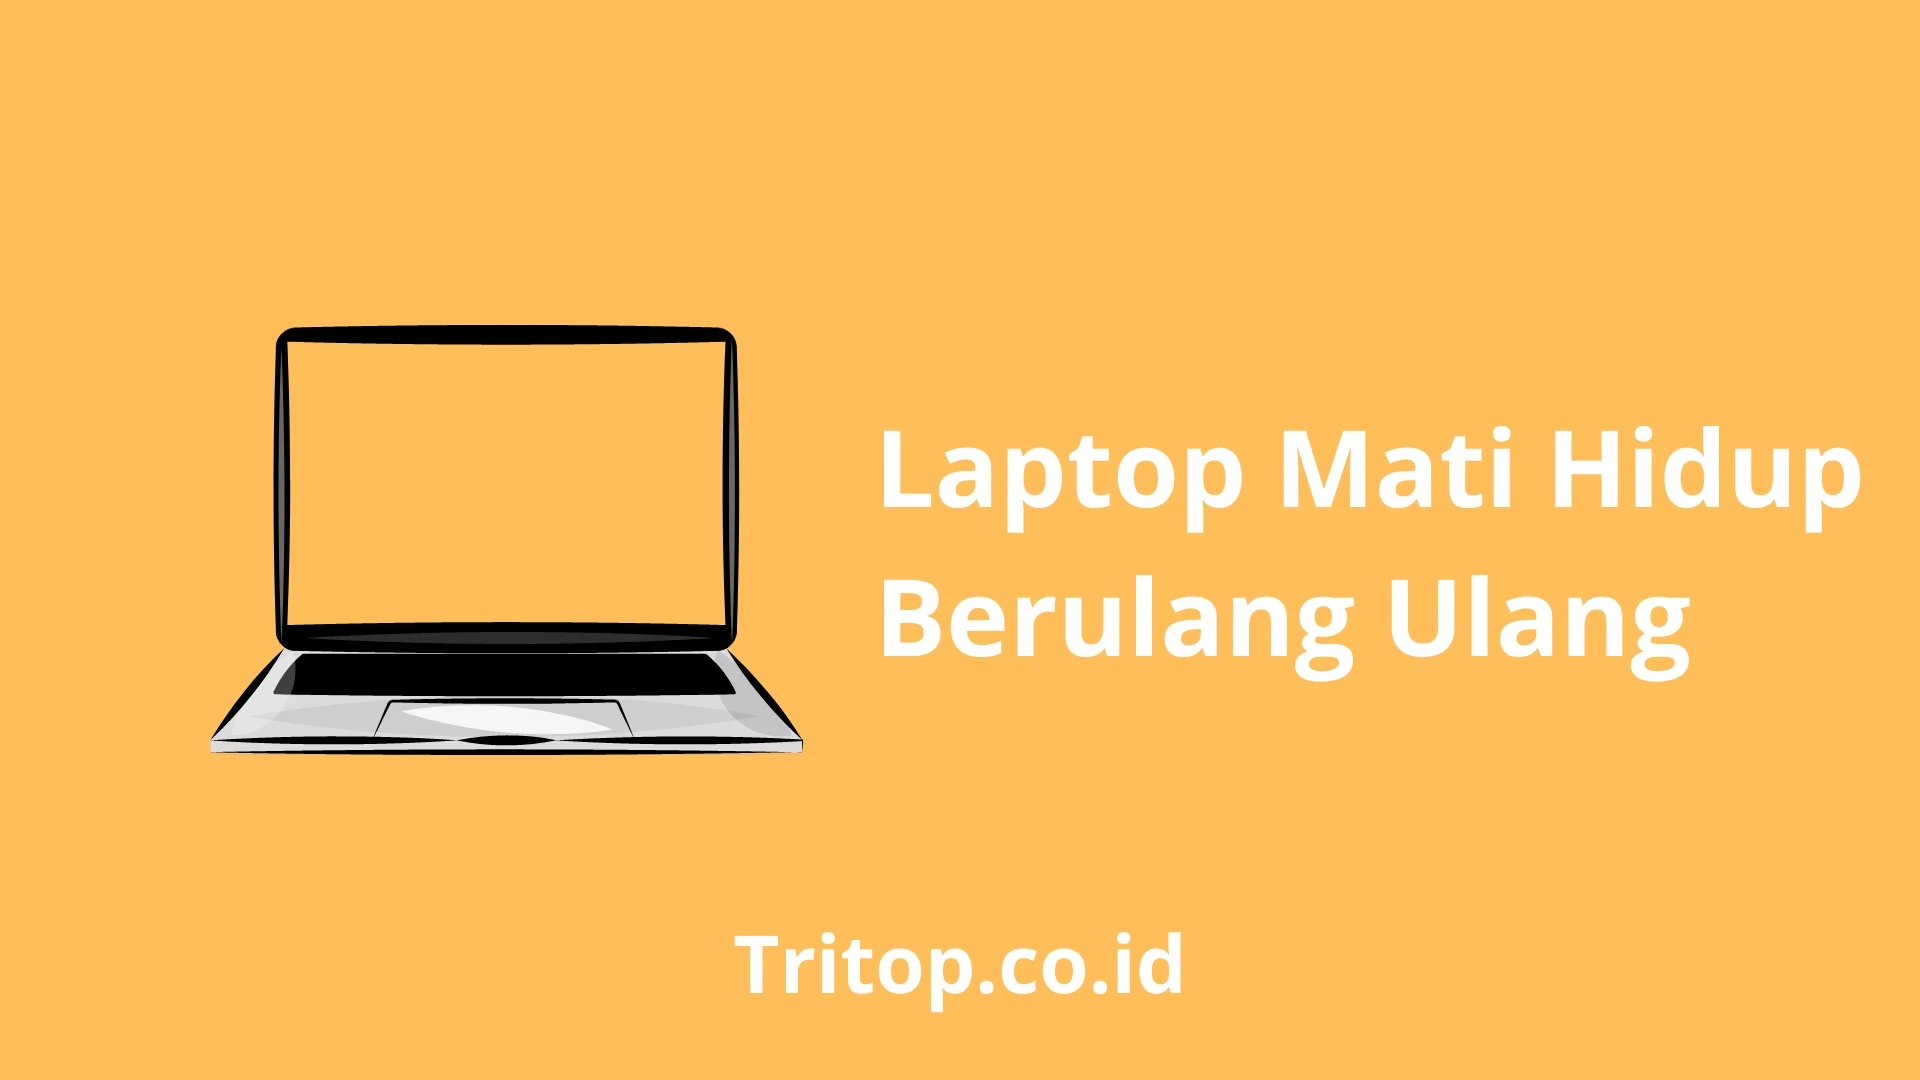 Laptop Mati Hidup Berulang Ulang tritop.co.id